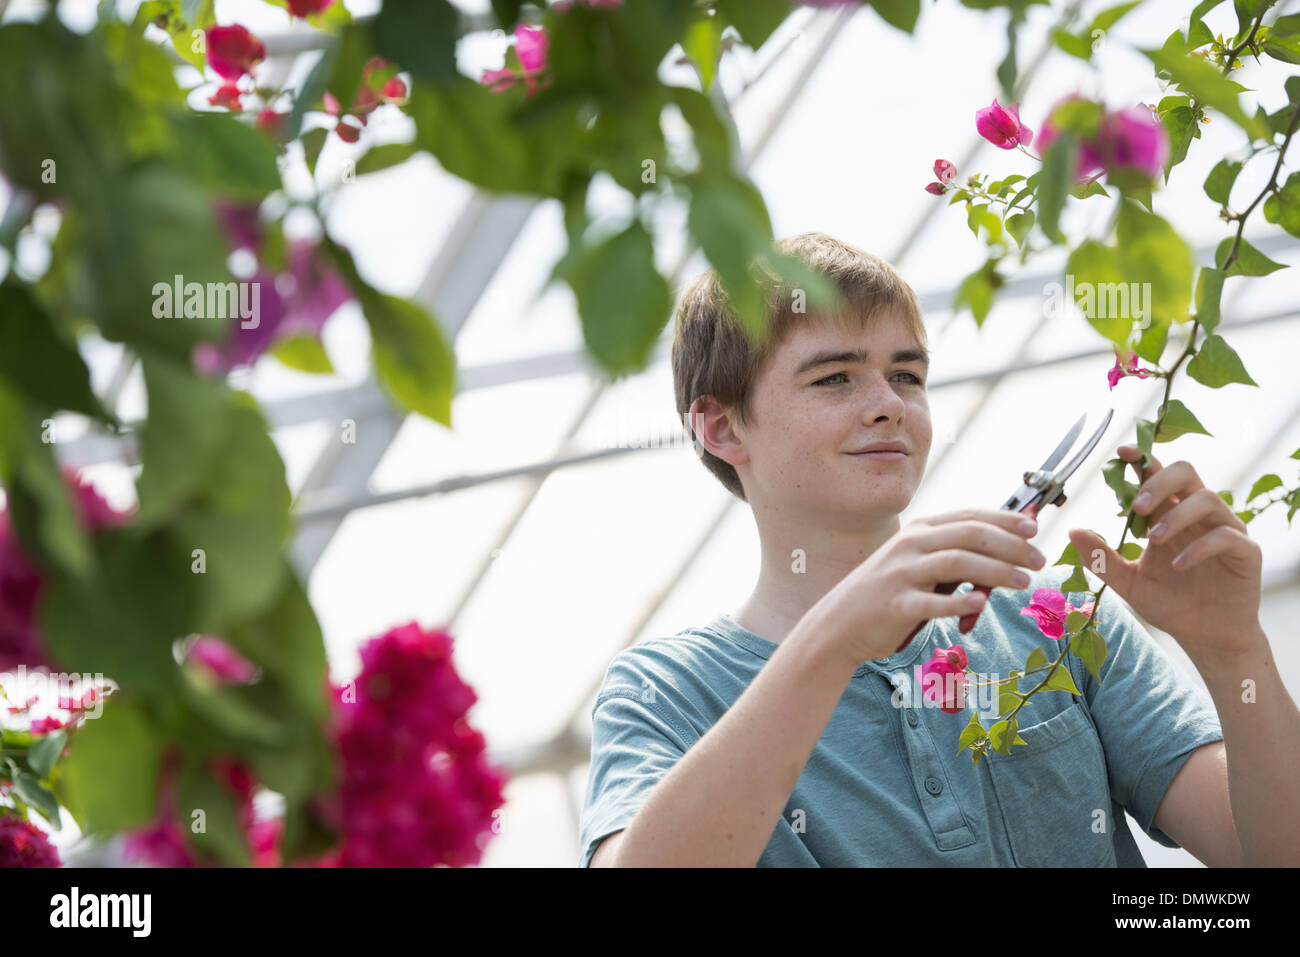 Ein kleiner Junge in einem organischen Gärtnerei Gewächshaus arbeiten. Stockfoto